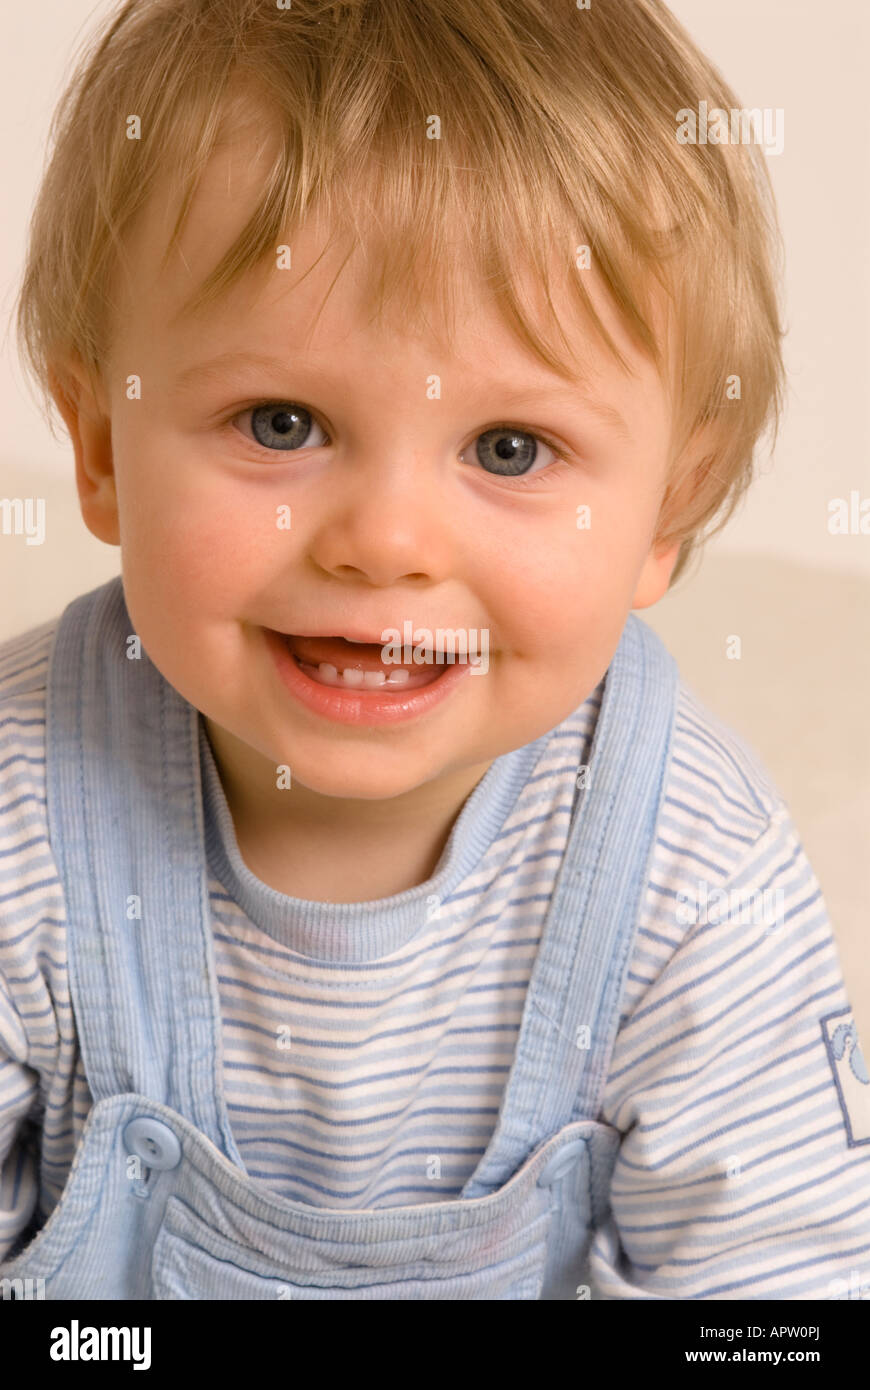 Bébé garçon d'un an regardant la caméra rire souriant bouche heureuse ouverte habillée de T-shirt bleu et salopette, dents de bébé Banque D'Images